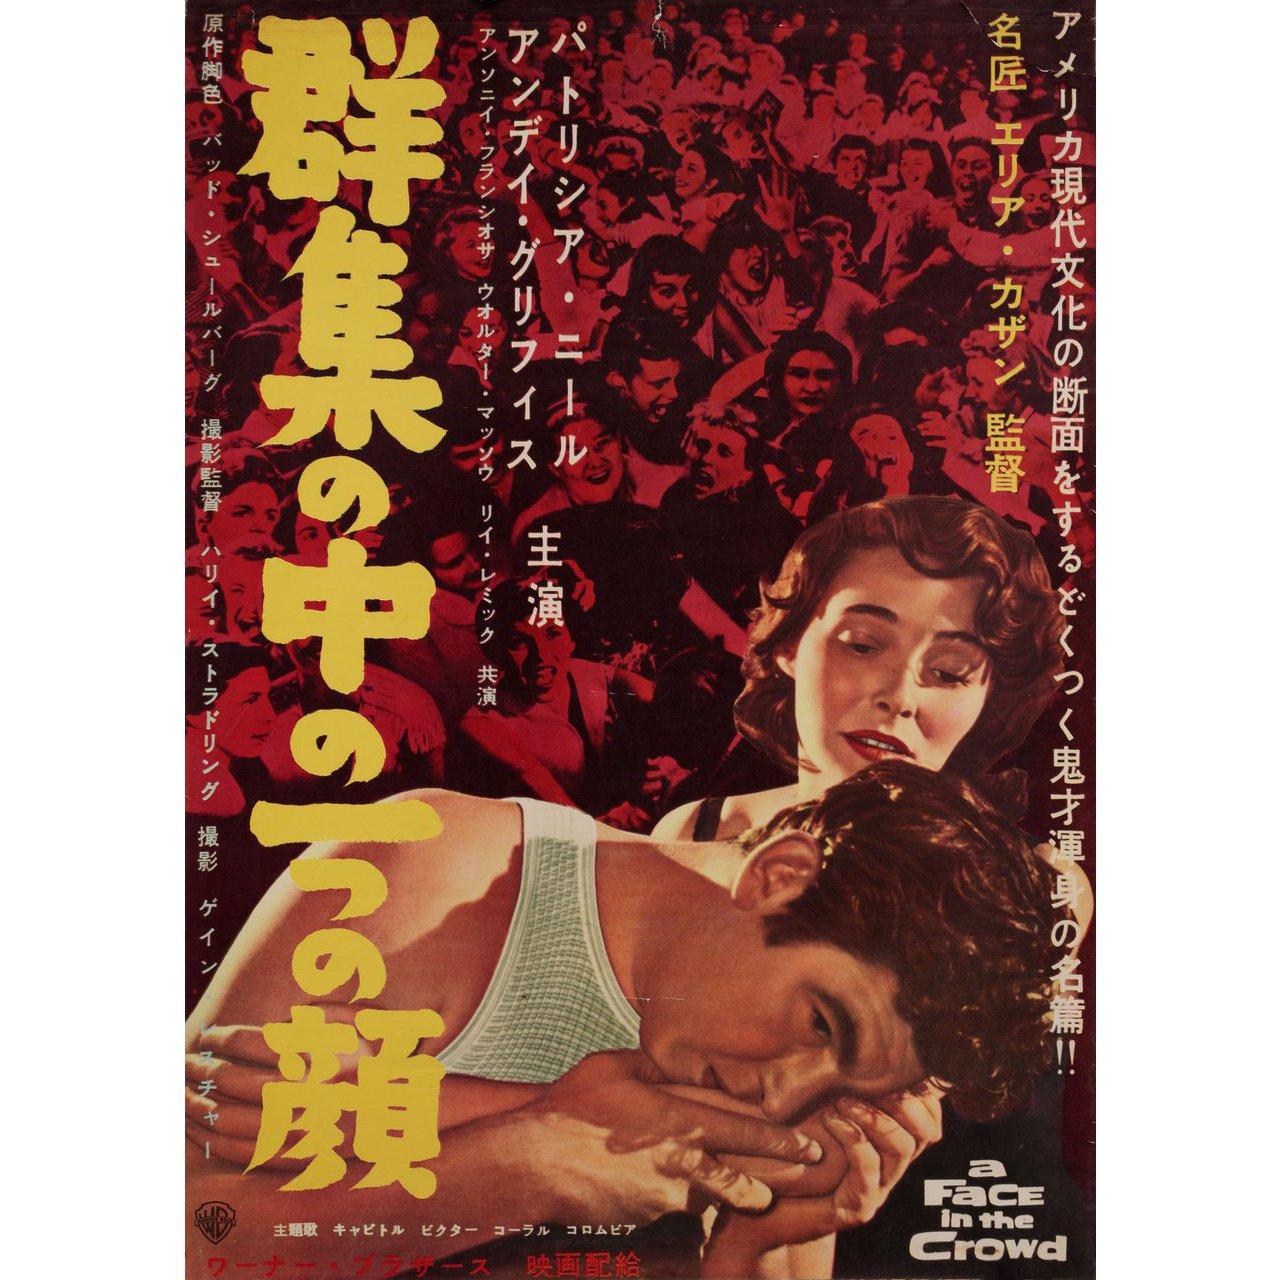 Affiche originale japonaise B2 de 1957 pour le film Un visage dans la foule réalisé par Elia Kazan avec Andy Griffith / Patricia Neal / Anthony Franciosa / Walter Matthau. Bon état, roulé. Veuillez noter que la taille est indiquée en pouces et que